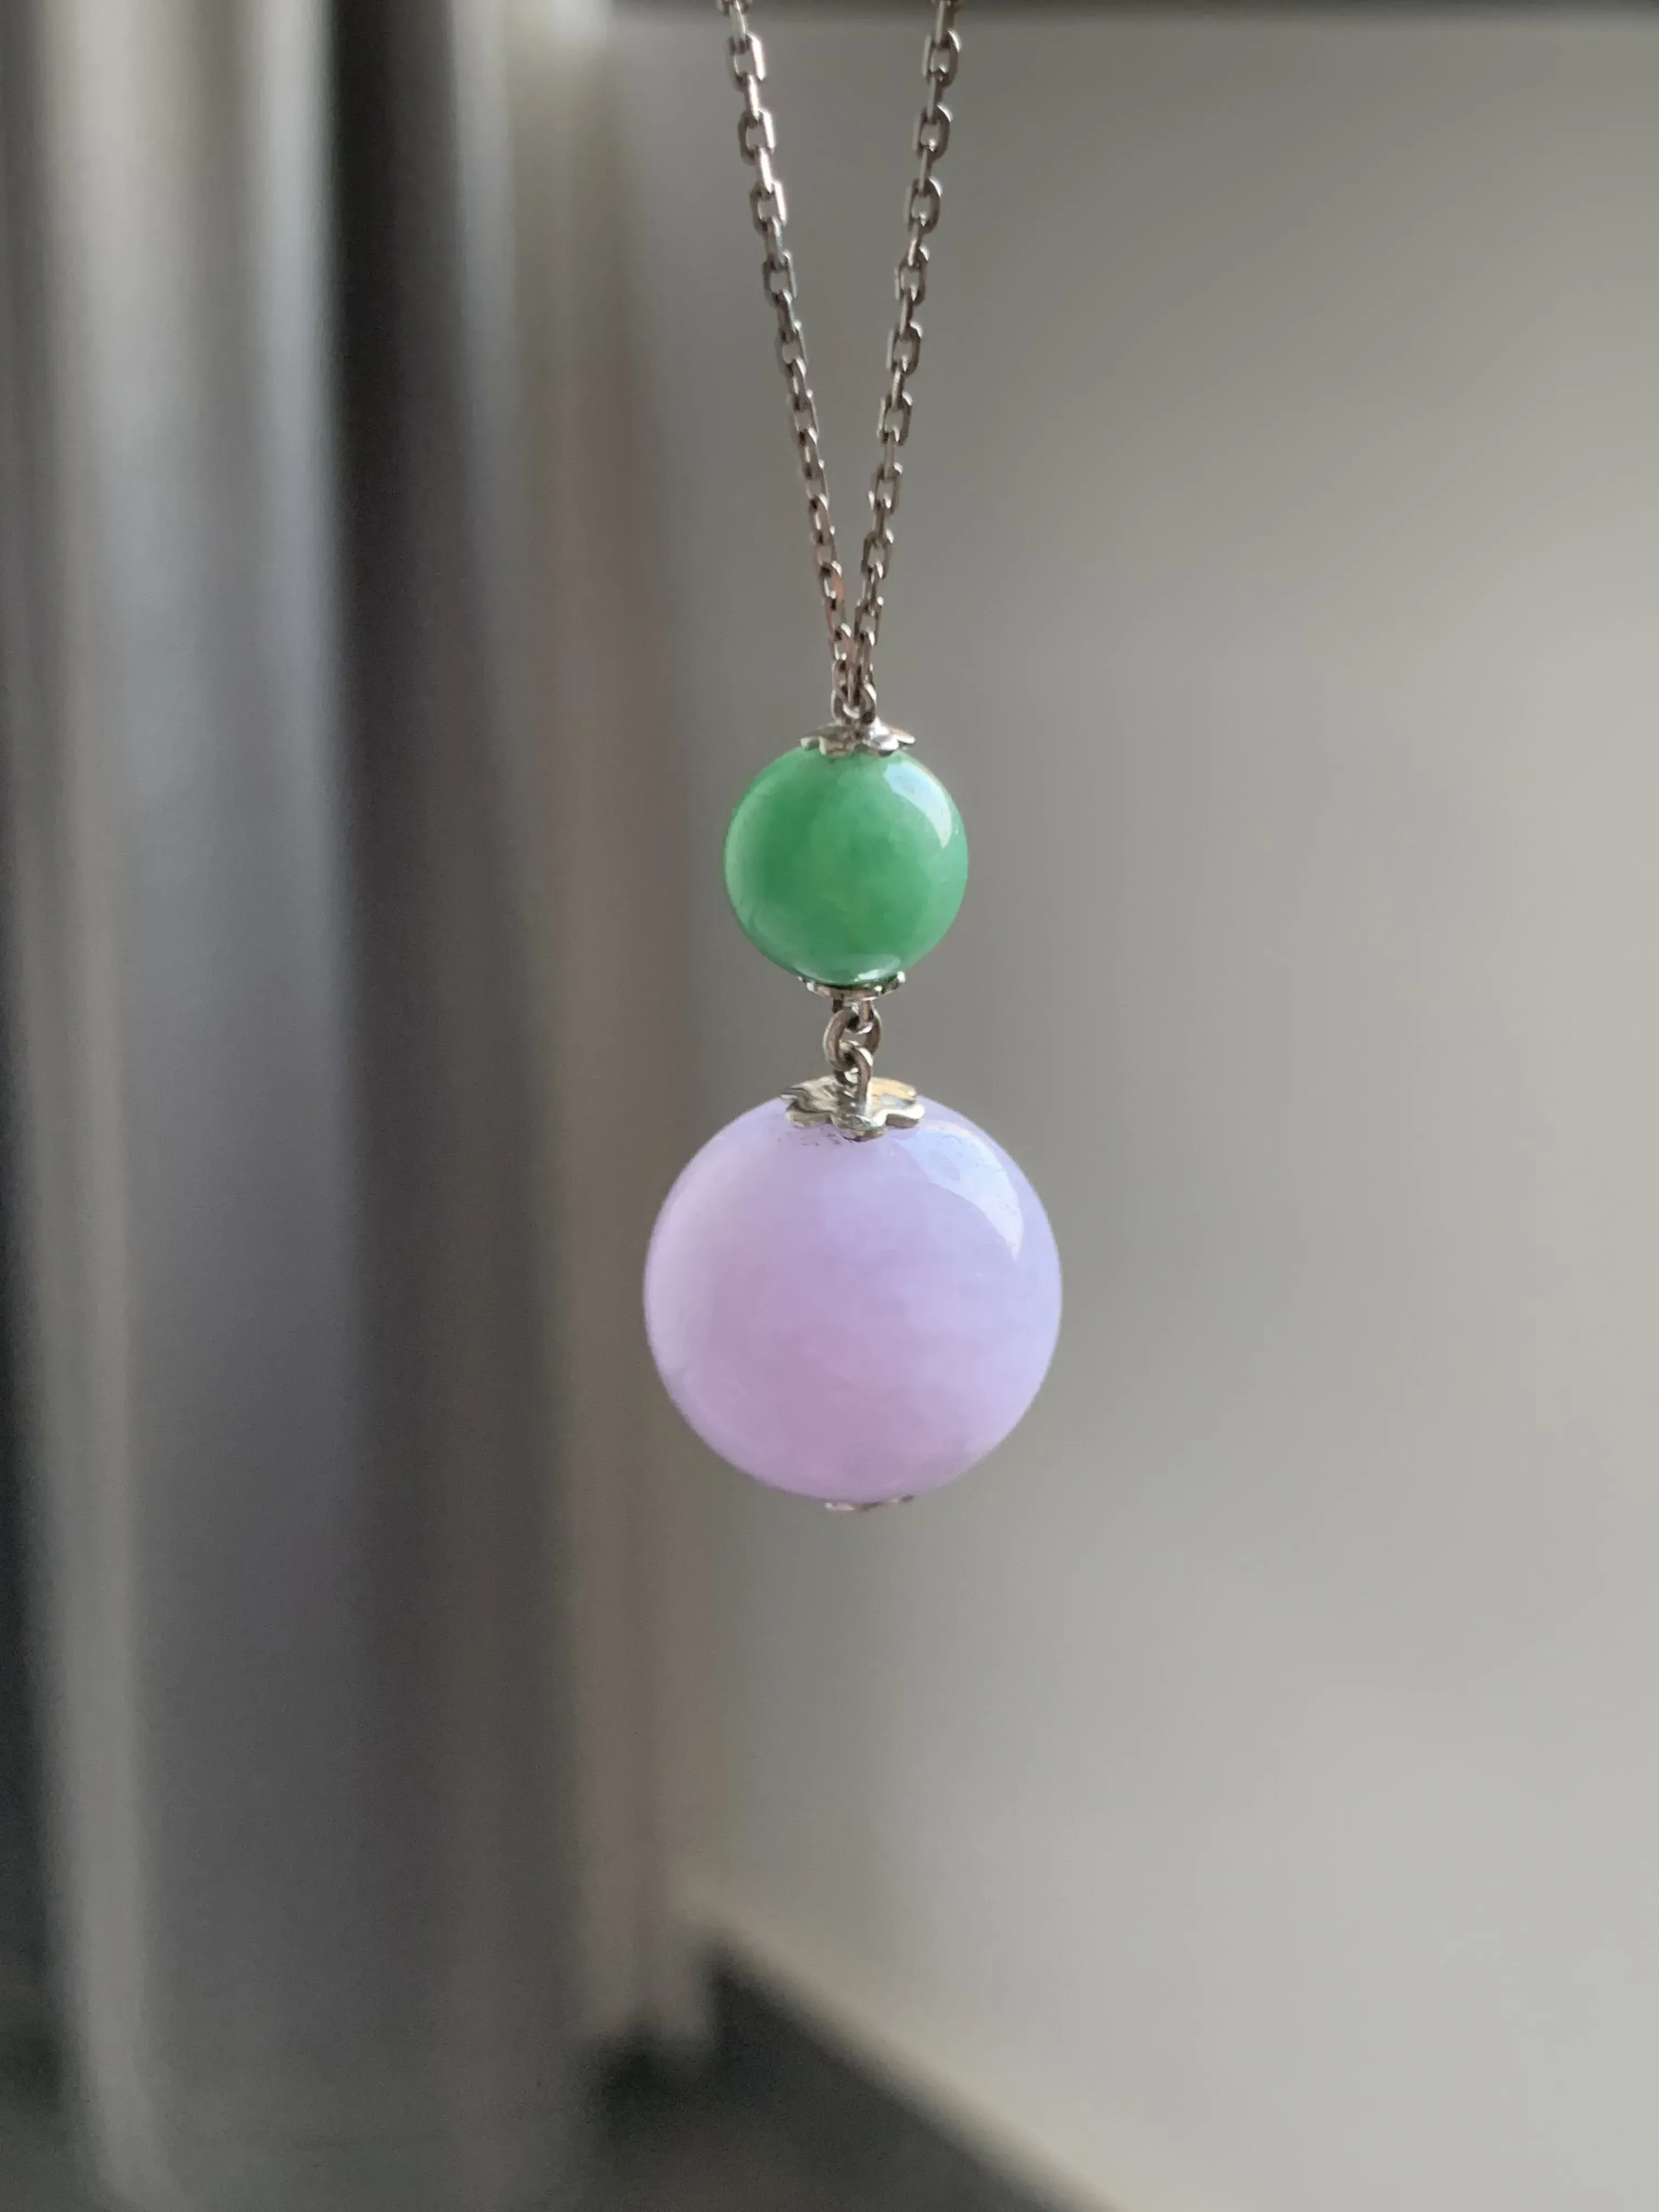 【紫绿珠子锁骨项链】绿珠裸石：9*9 紫珠裸石16.5*16.5
18k白金镶嵌，料子细腻，圆圆润润，颜色鲜明，清新优雅